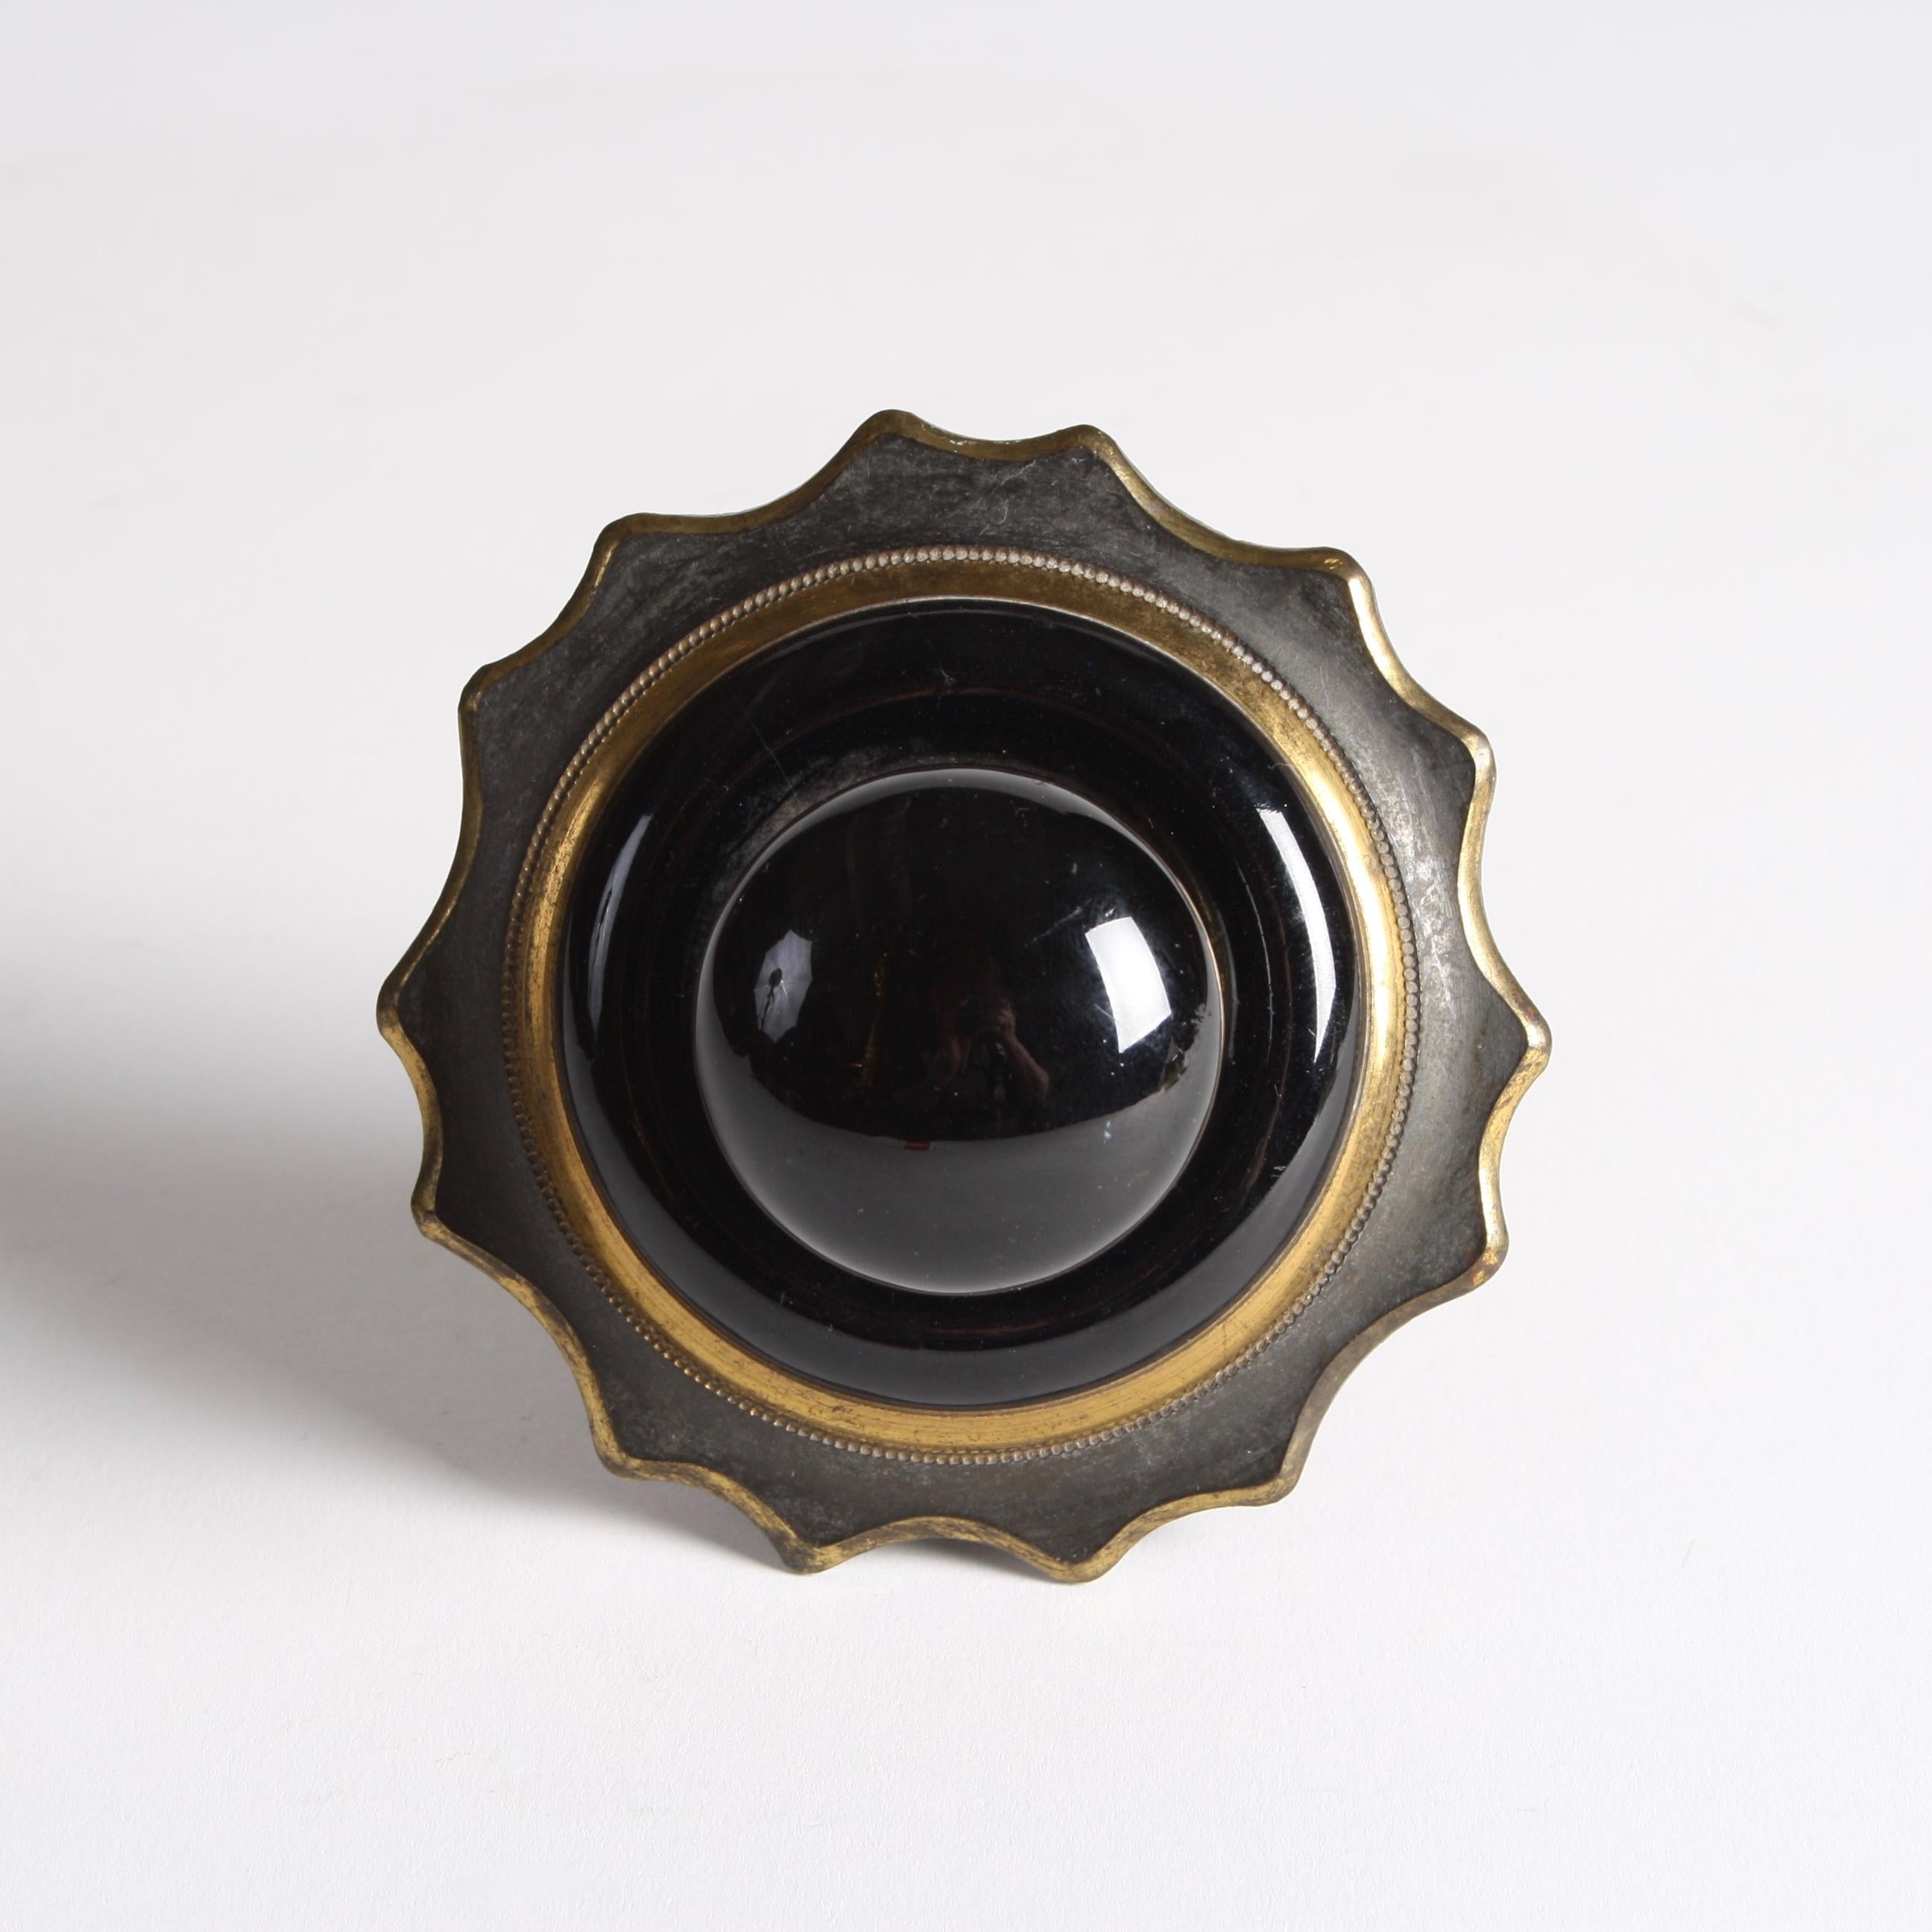 Ein viktorianischer Klingelzug aus schwarzer Keramik und zweifarbigem Messing, Rückwand mit gewelltem Rand.

Mit originalem Kettenmechanismus für die Verbindung zur Glocke.

Durchmesser der Rückenplatte: 3 3/4 Zoll.

           